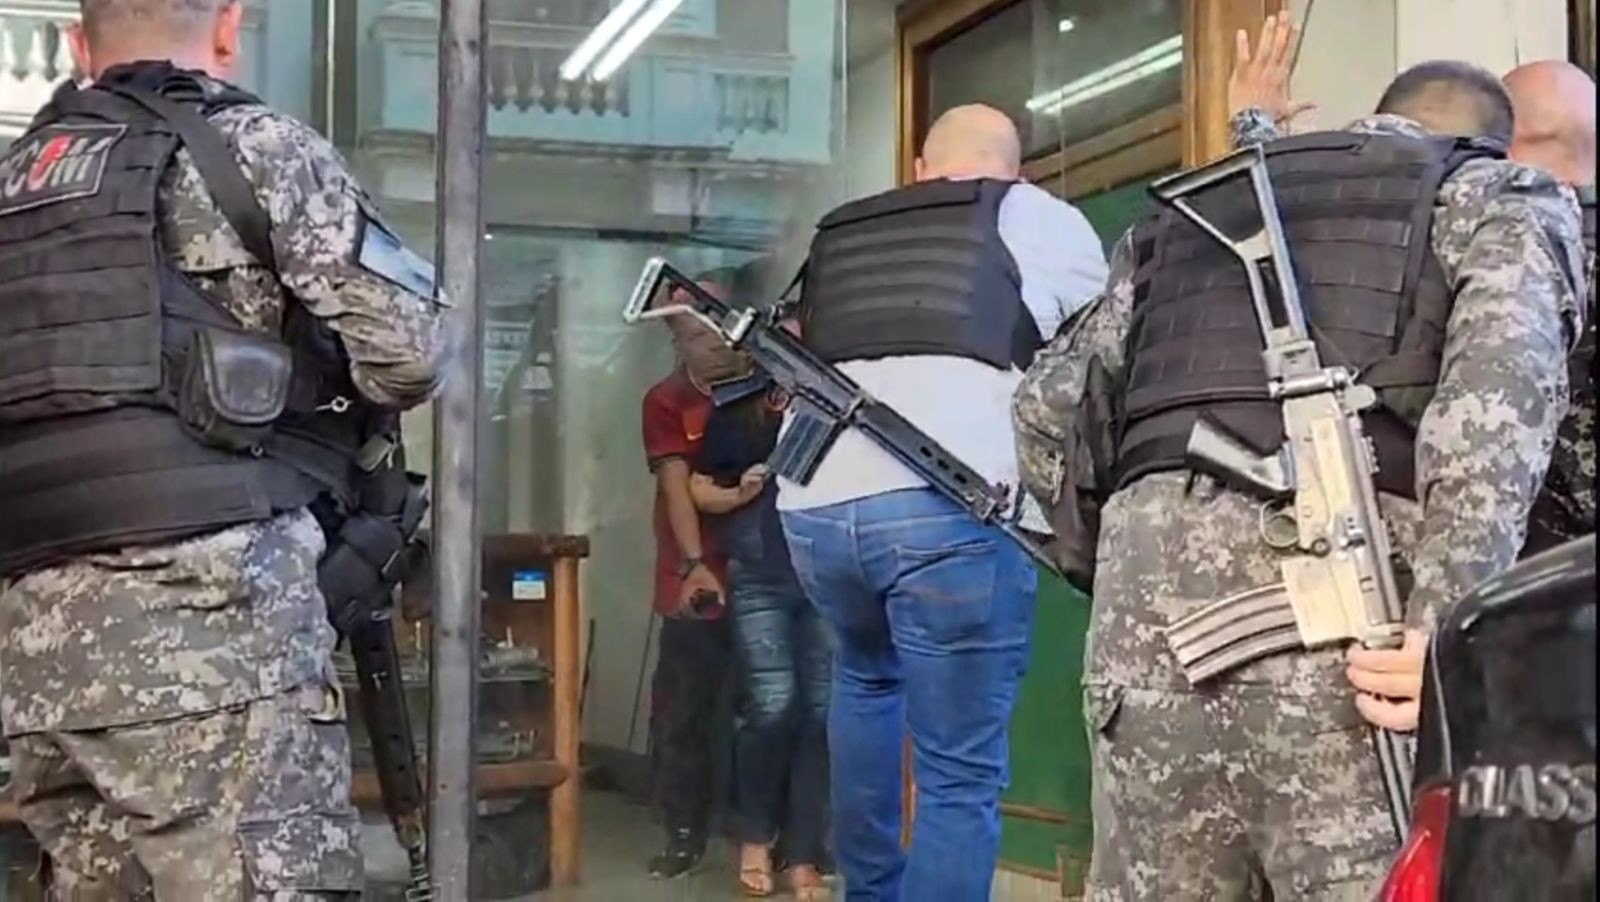 Momento em que criminoso liberta refém em banco do Centro — Foto: Felipe Grinberg